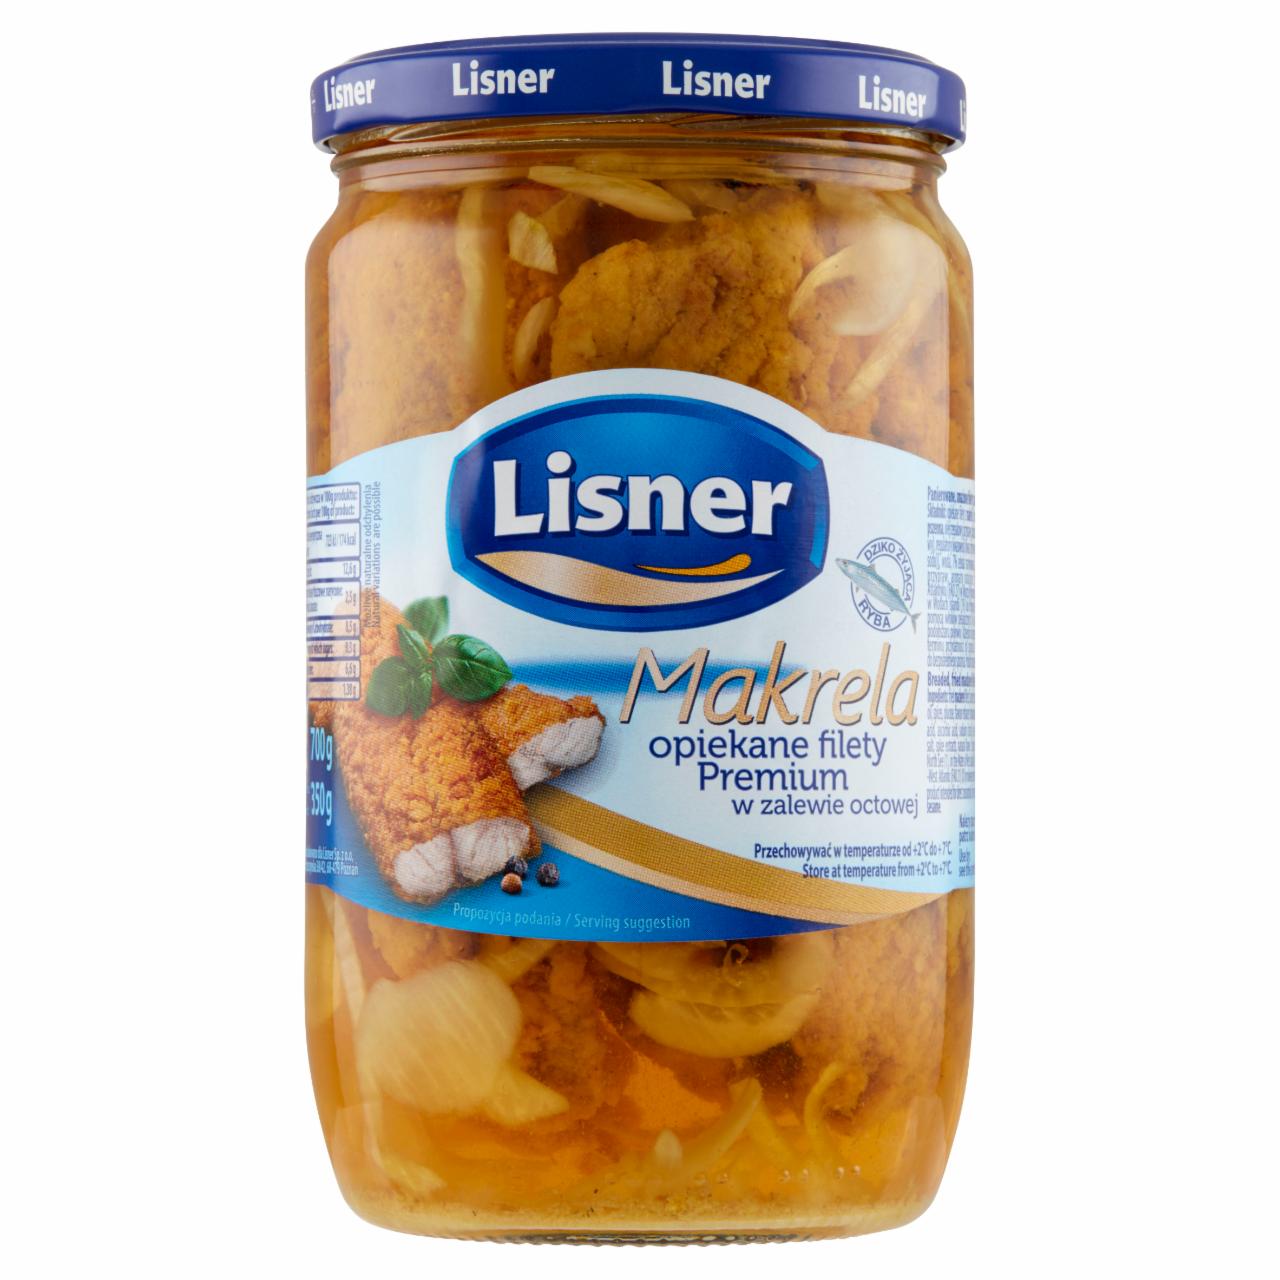 Zdjęcia - Lisner Makrela opiekane filety Premium w zalewie octowej 700 g